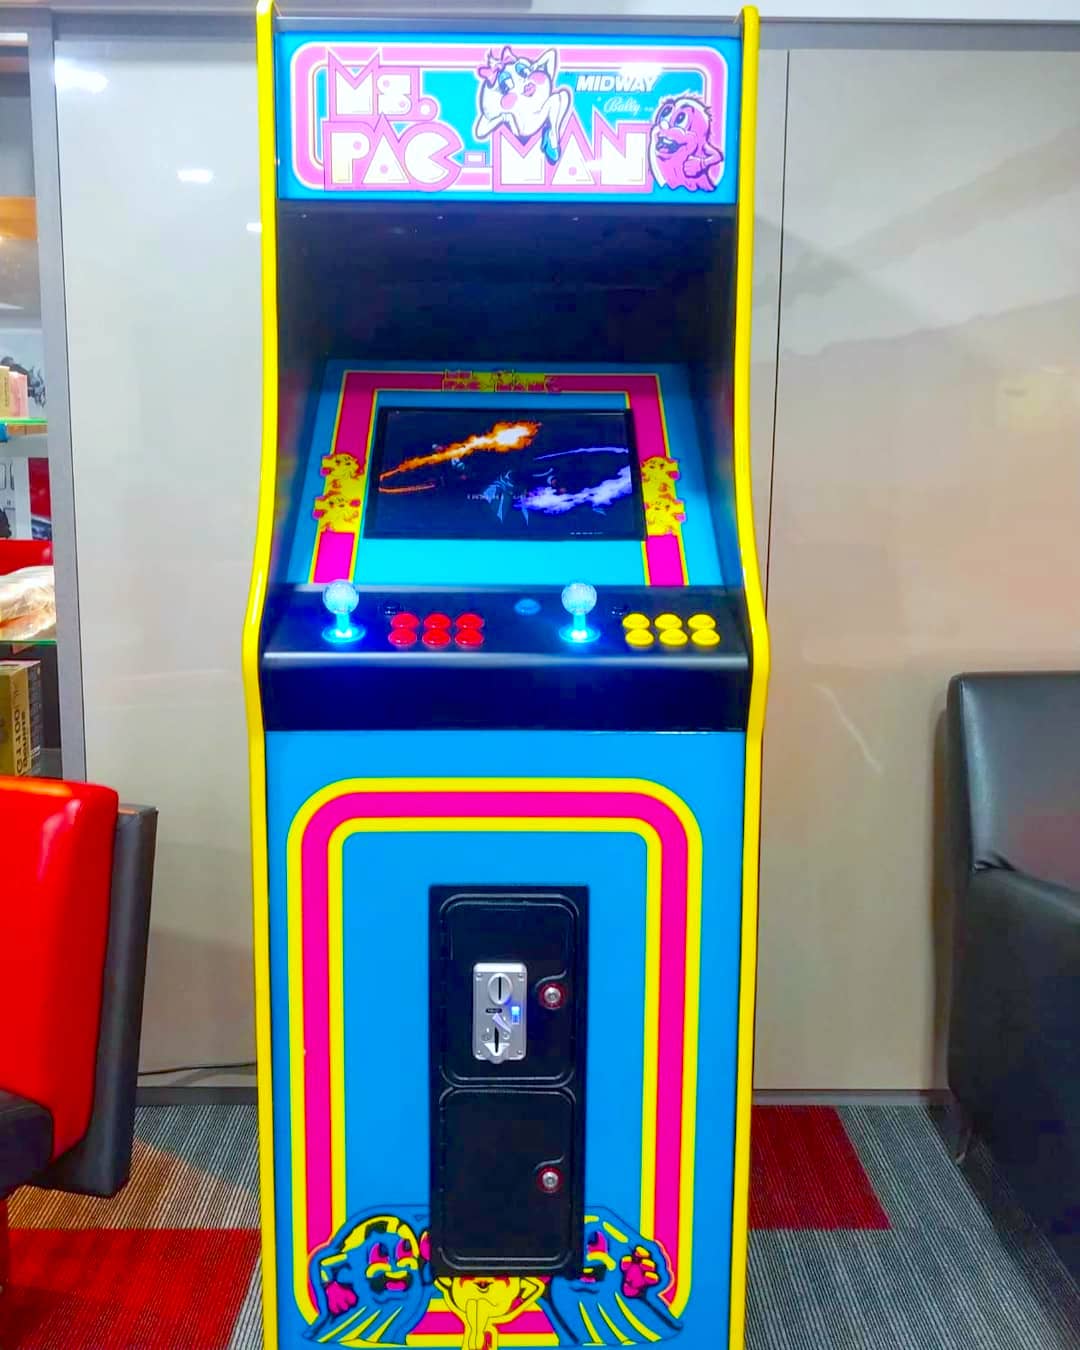 Pacman Video Arcade Machine